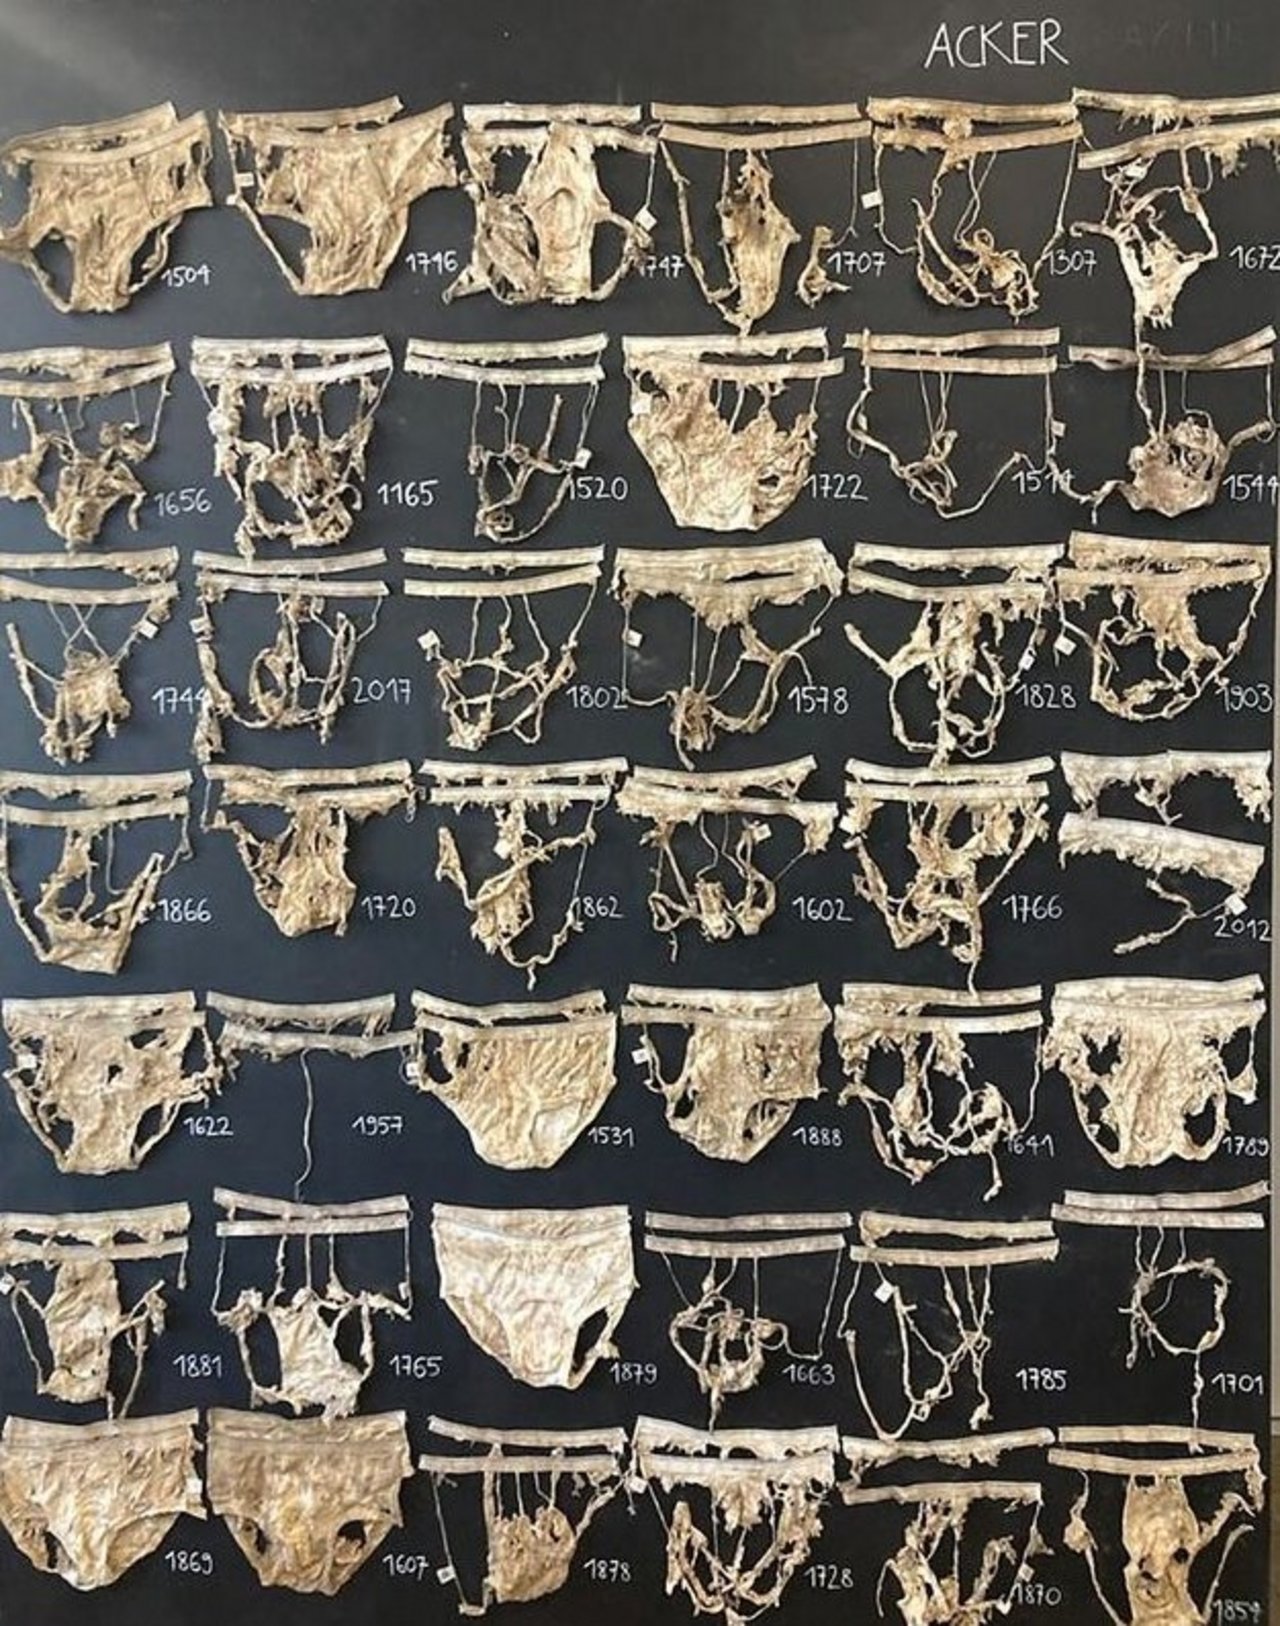 An dieser «Wand der Beweise» hängen einige der ausgegrabenen, halb zersetzten Unterhosen.